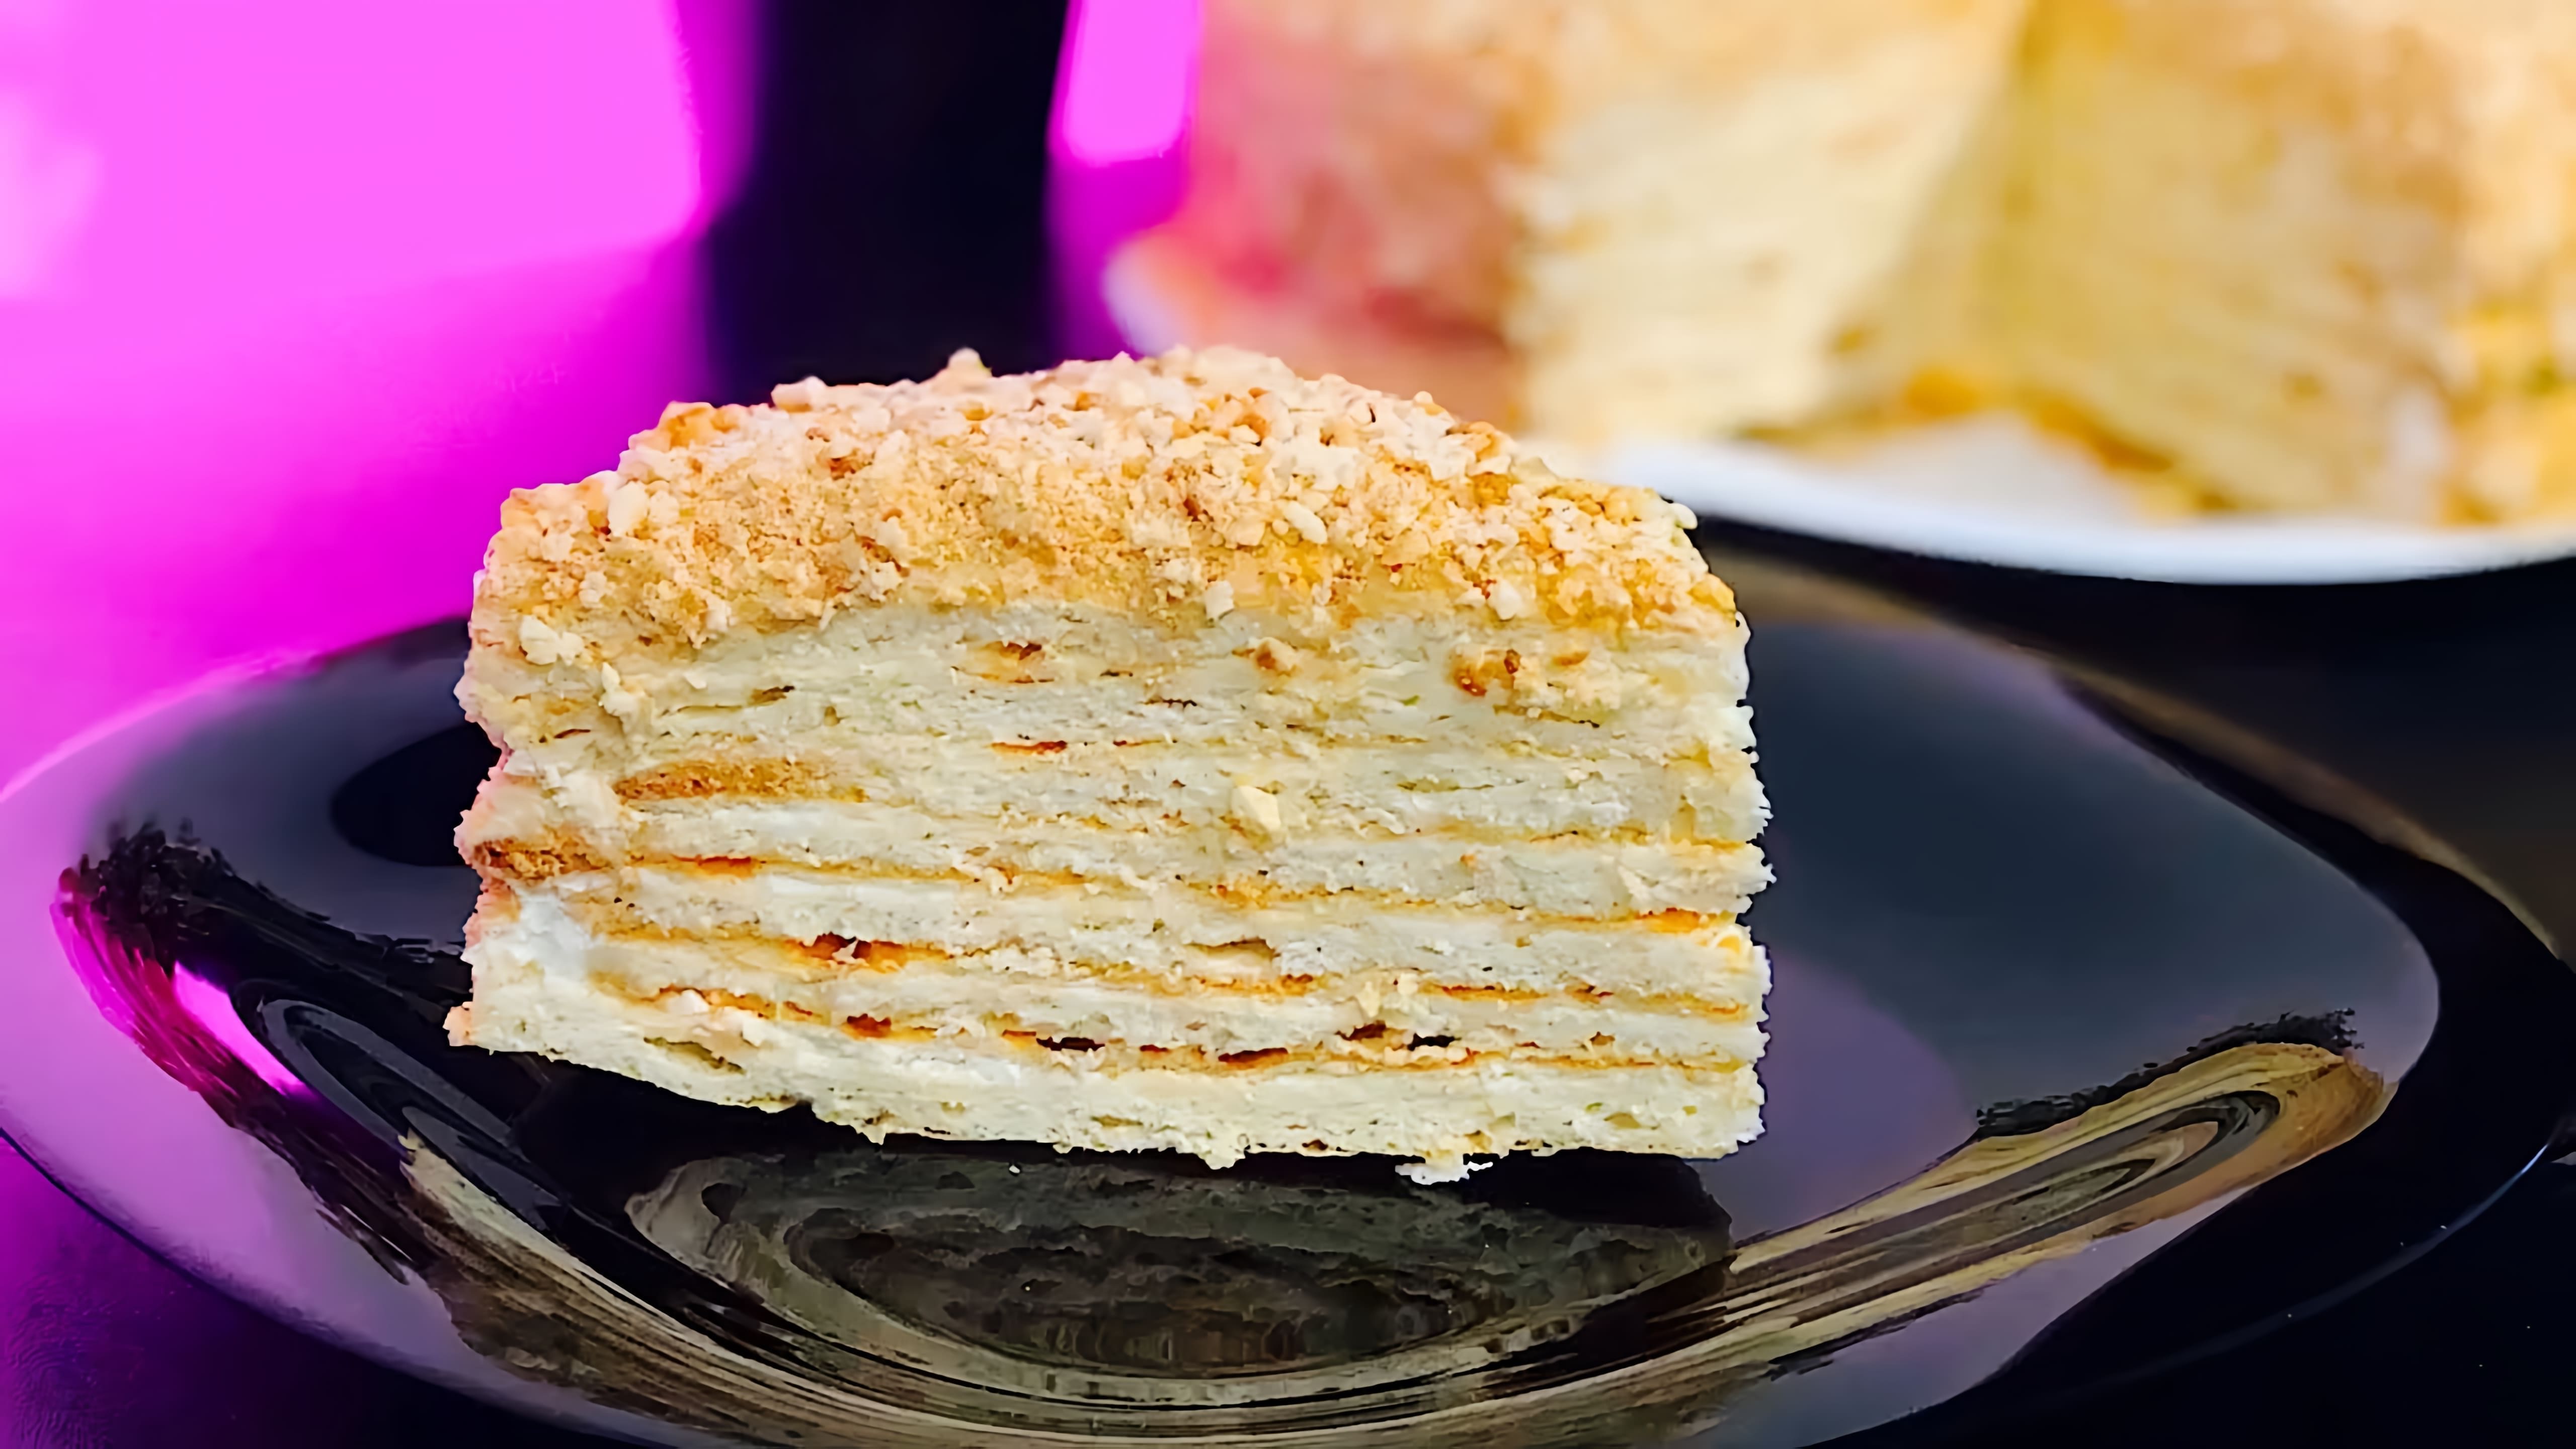 В этом видео демонстрируется рецепт приготовления классического сметанника - нежного, мягкого и в меру сладкого торта